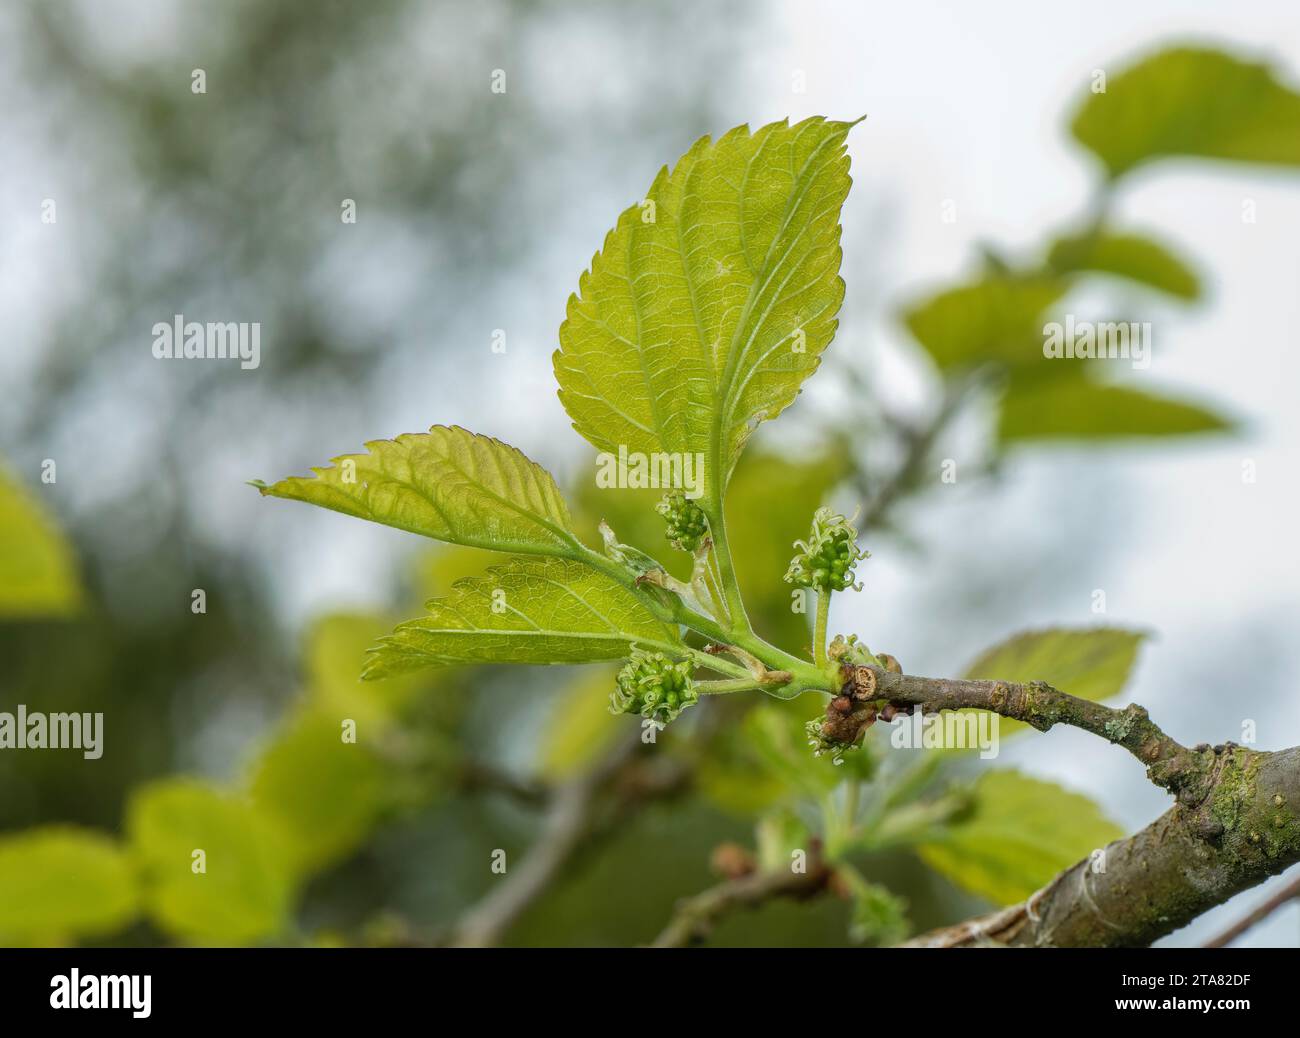 Fiore di gelso immagini e fotografie stock ad alta risoluzione - Alamy